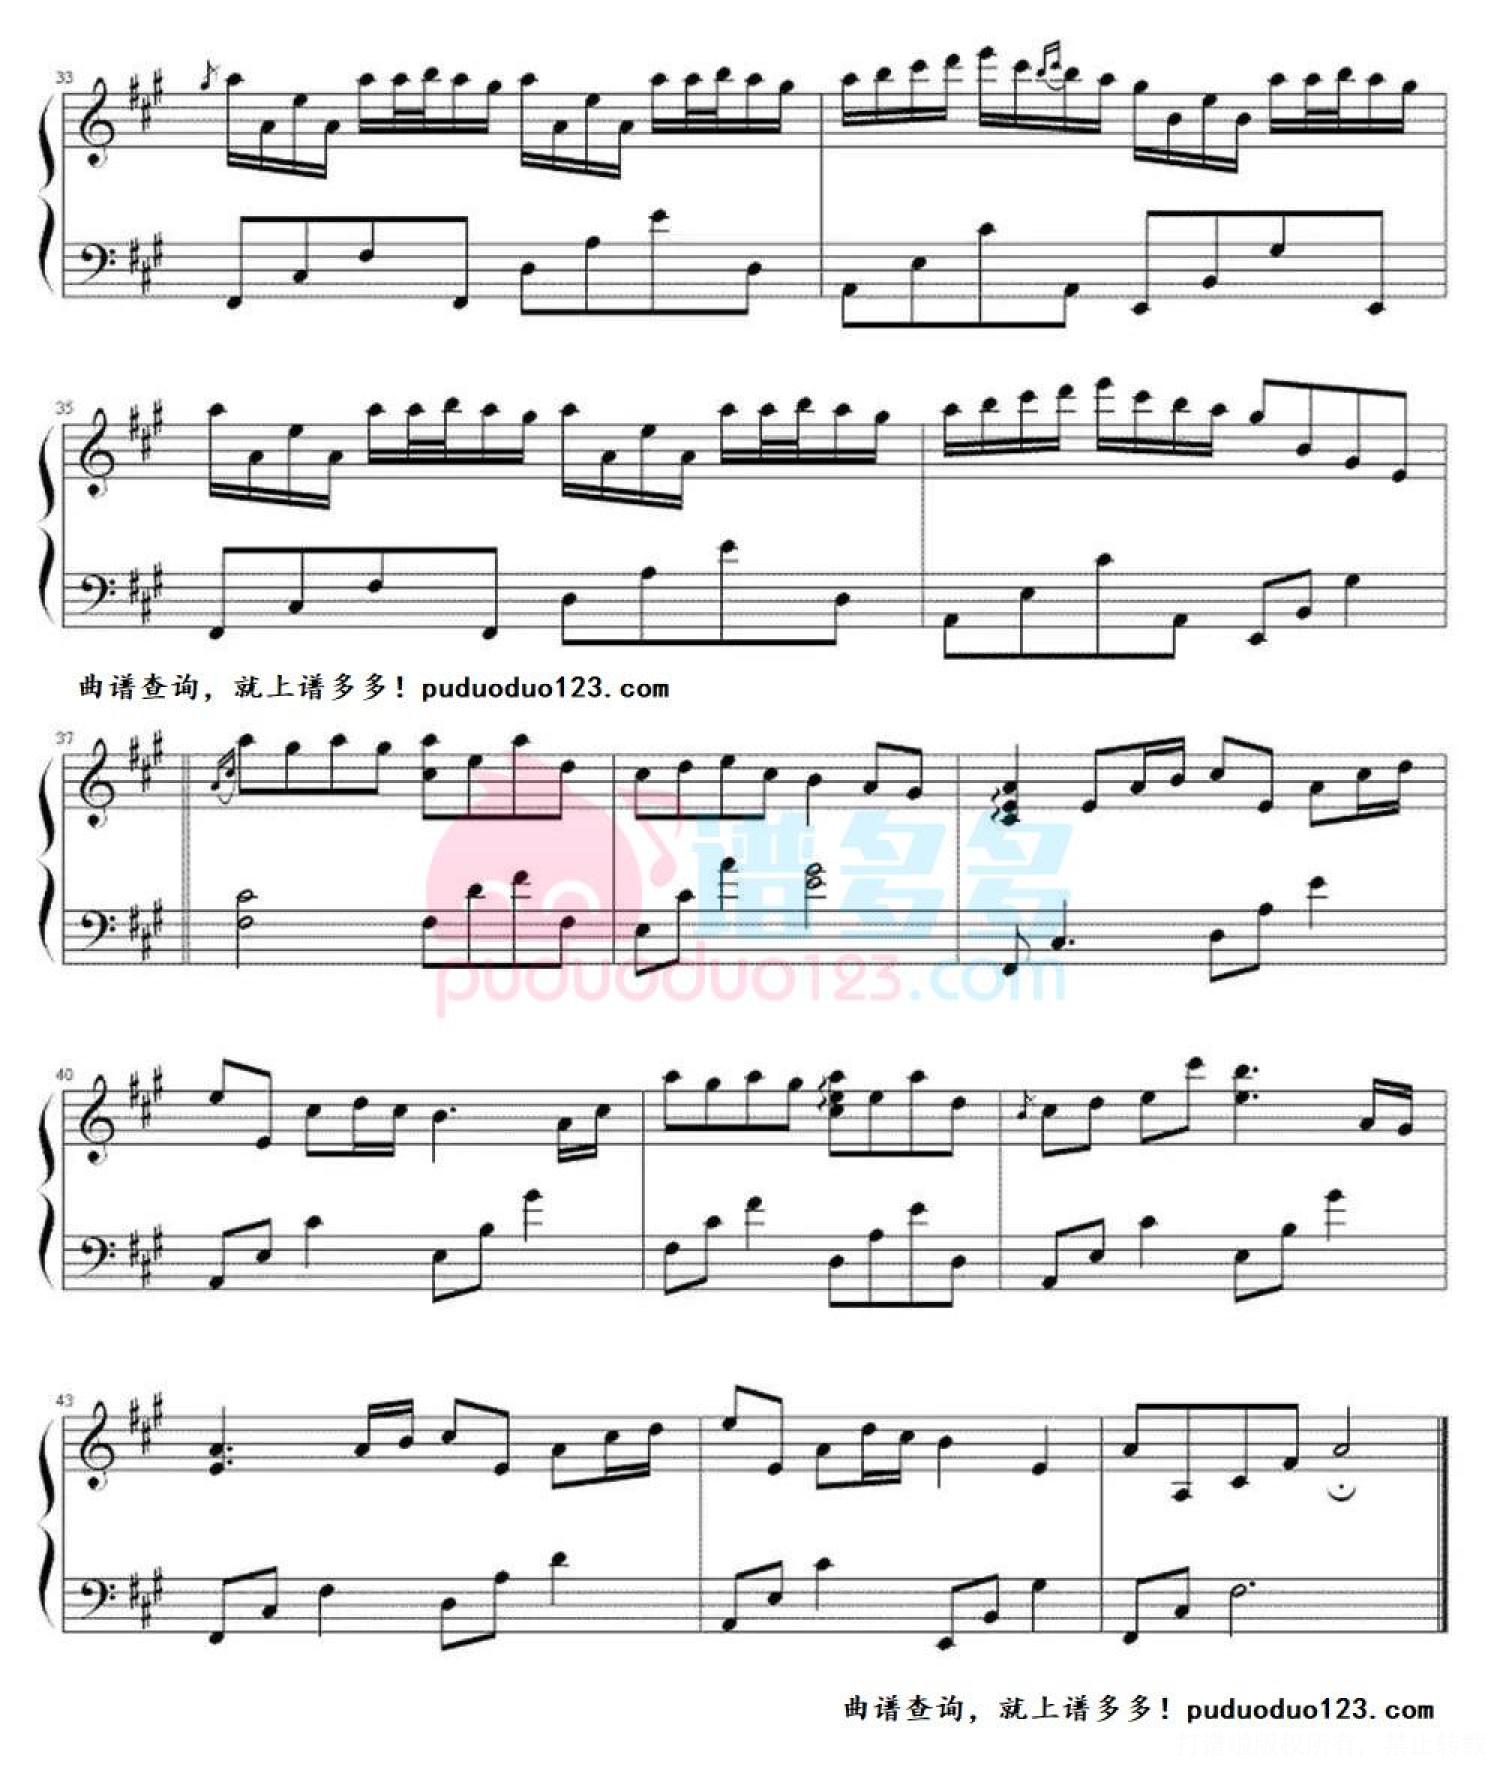 Sheet nhac river flow in you piano 01 | Blog Đàn Piano